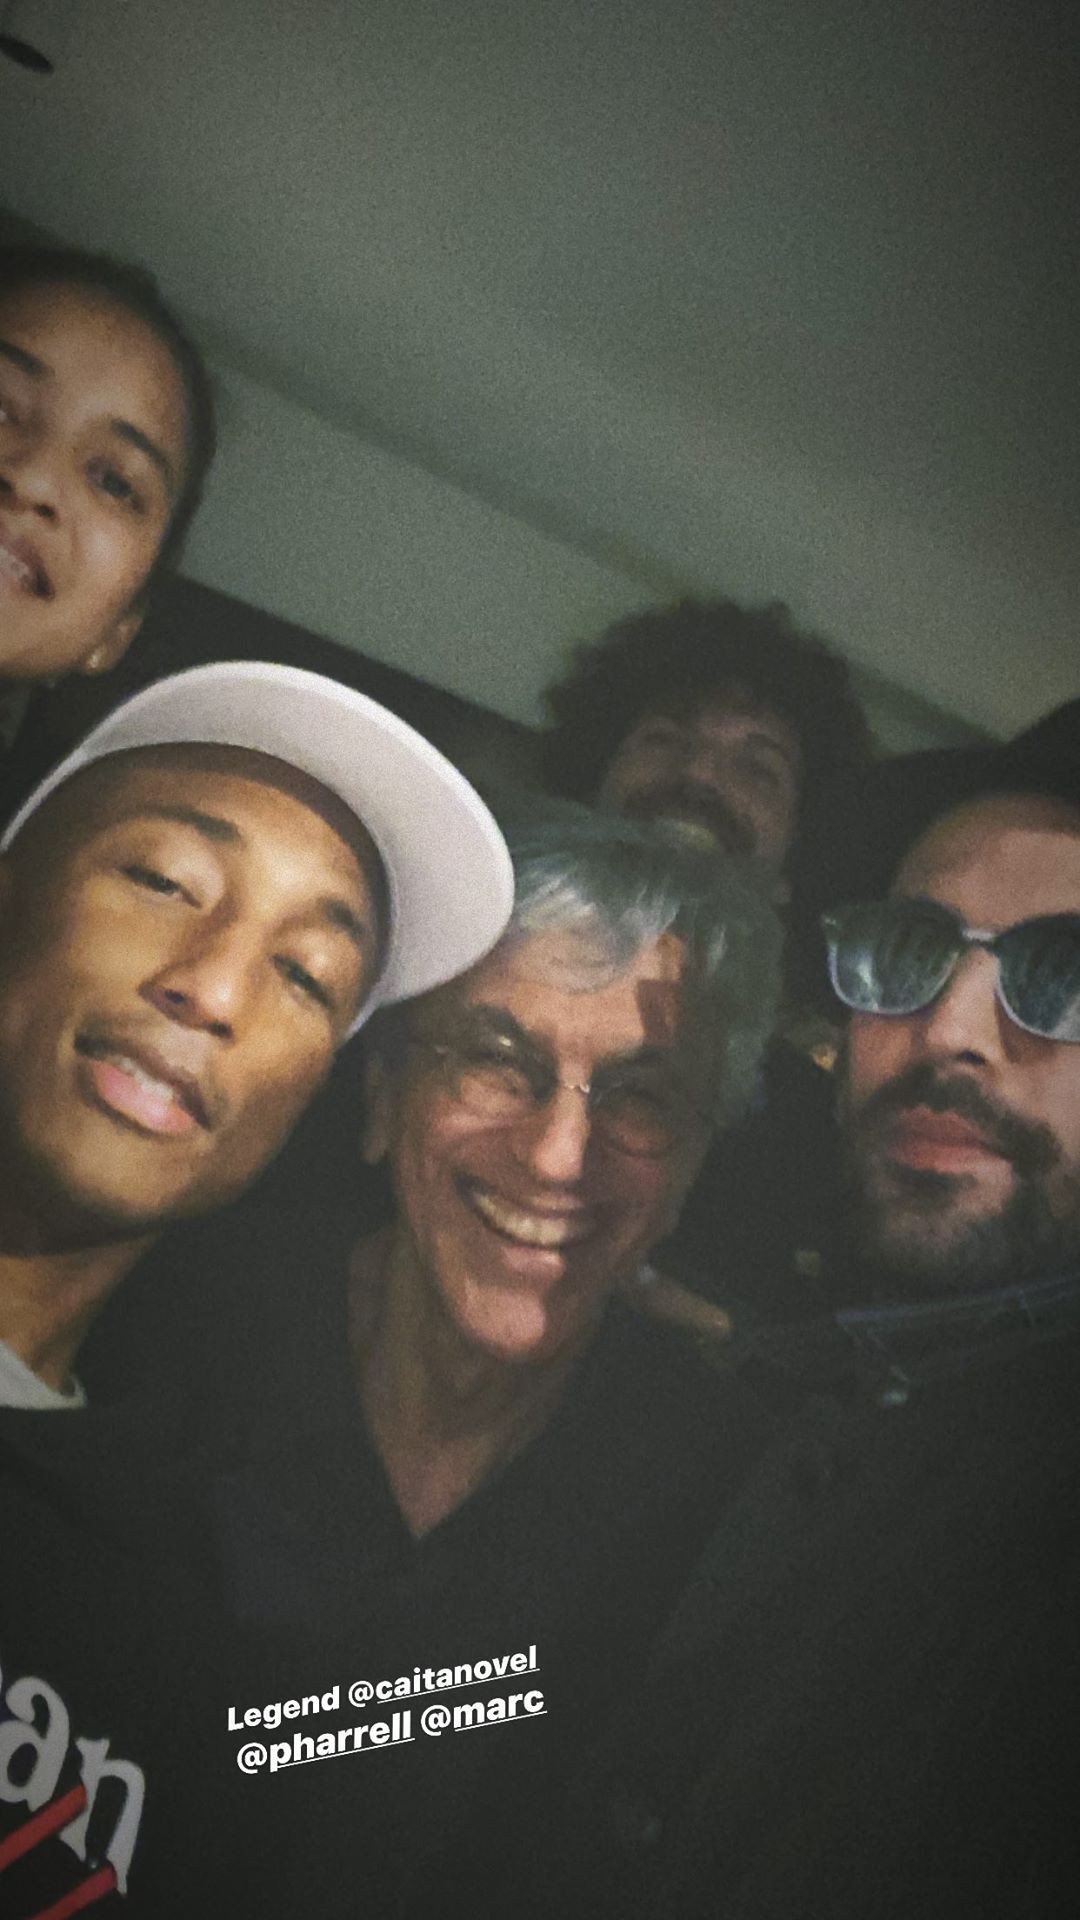 Pharrell Williams com Caetano Veloso (Foto: Reprodução/Instagram)